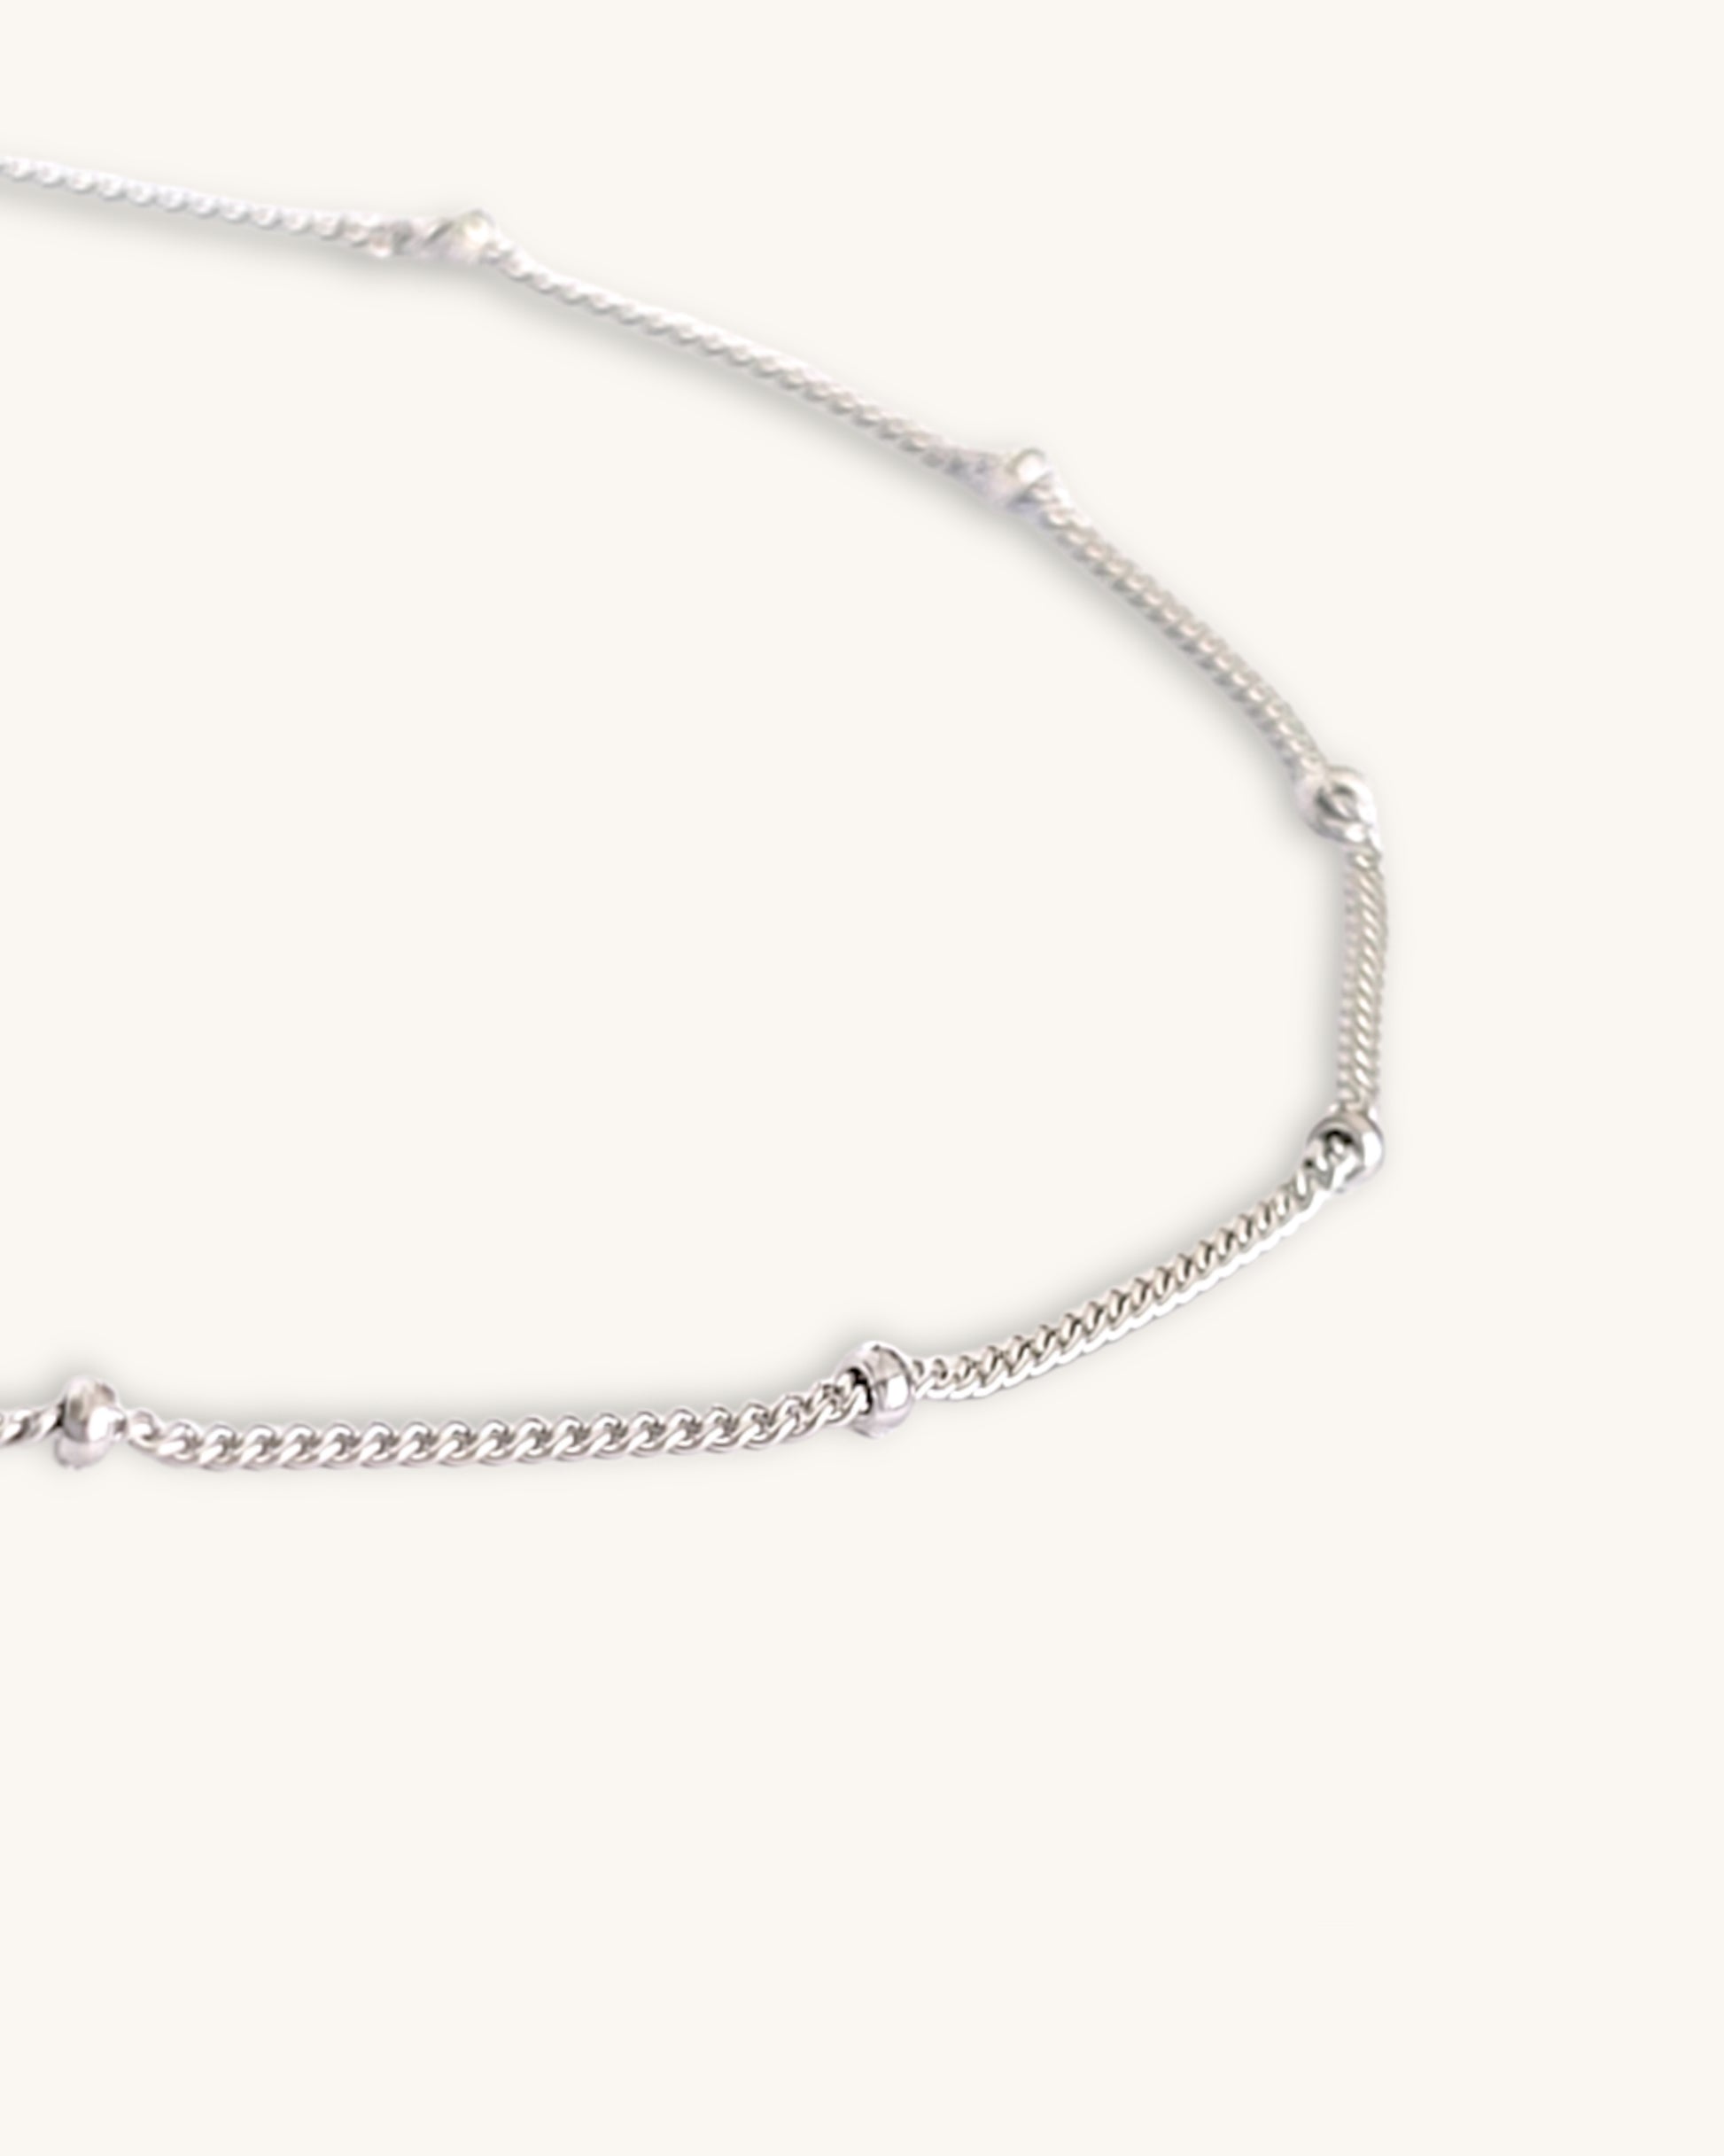 sterling silver bead bracelet